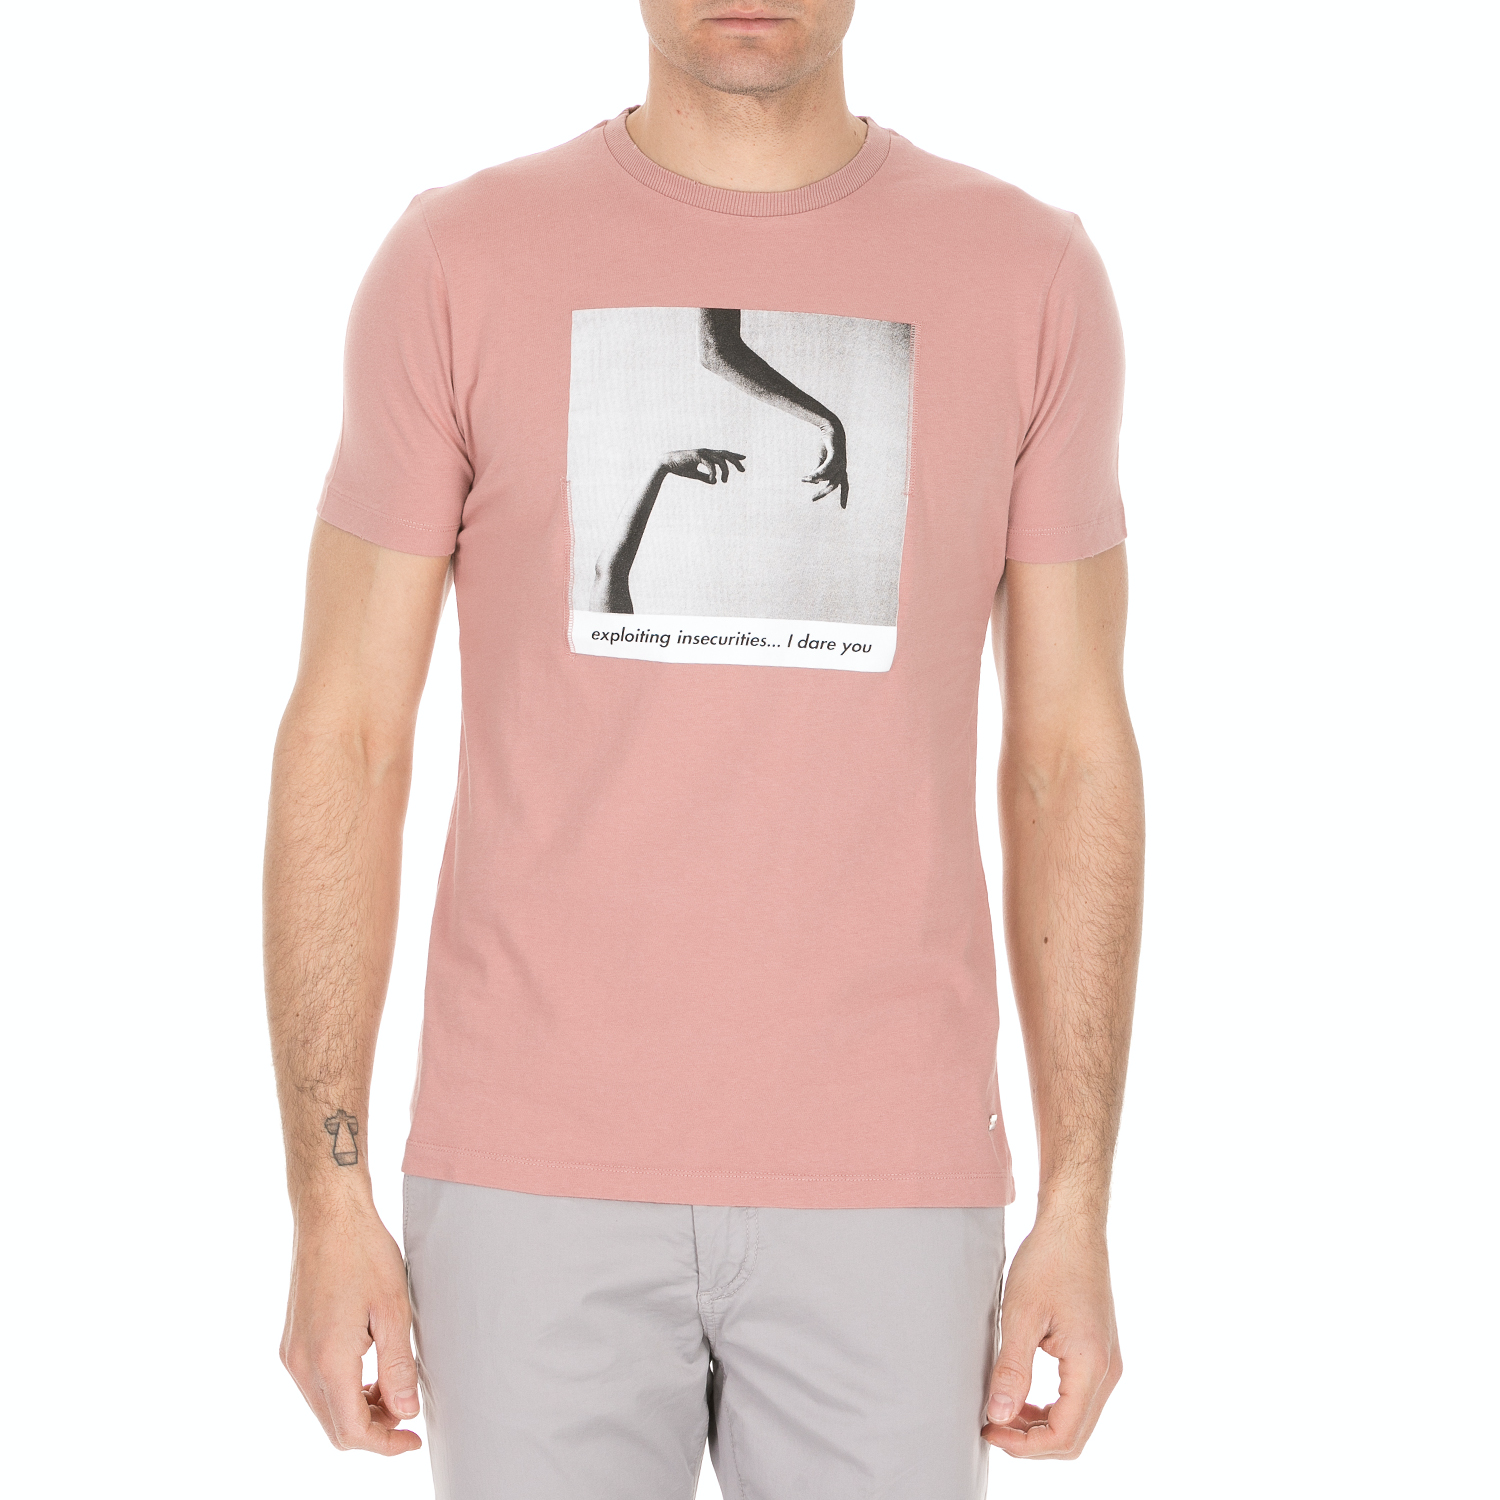 Ανδρικά/Ρούχα/Μπλούζες/Κοντομάνικες SSEINSE - Ανδρική κοντομάνικη μπλούζα SSEINSE ροζ